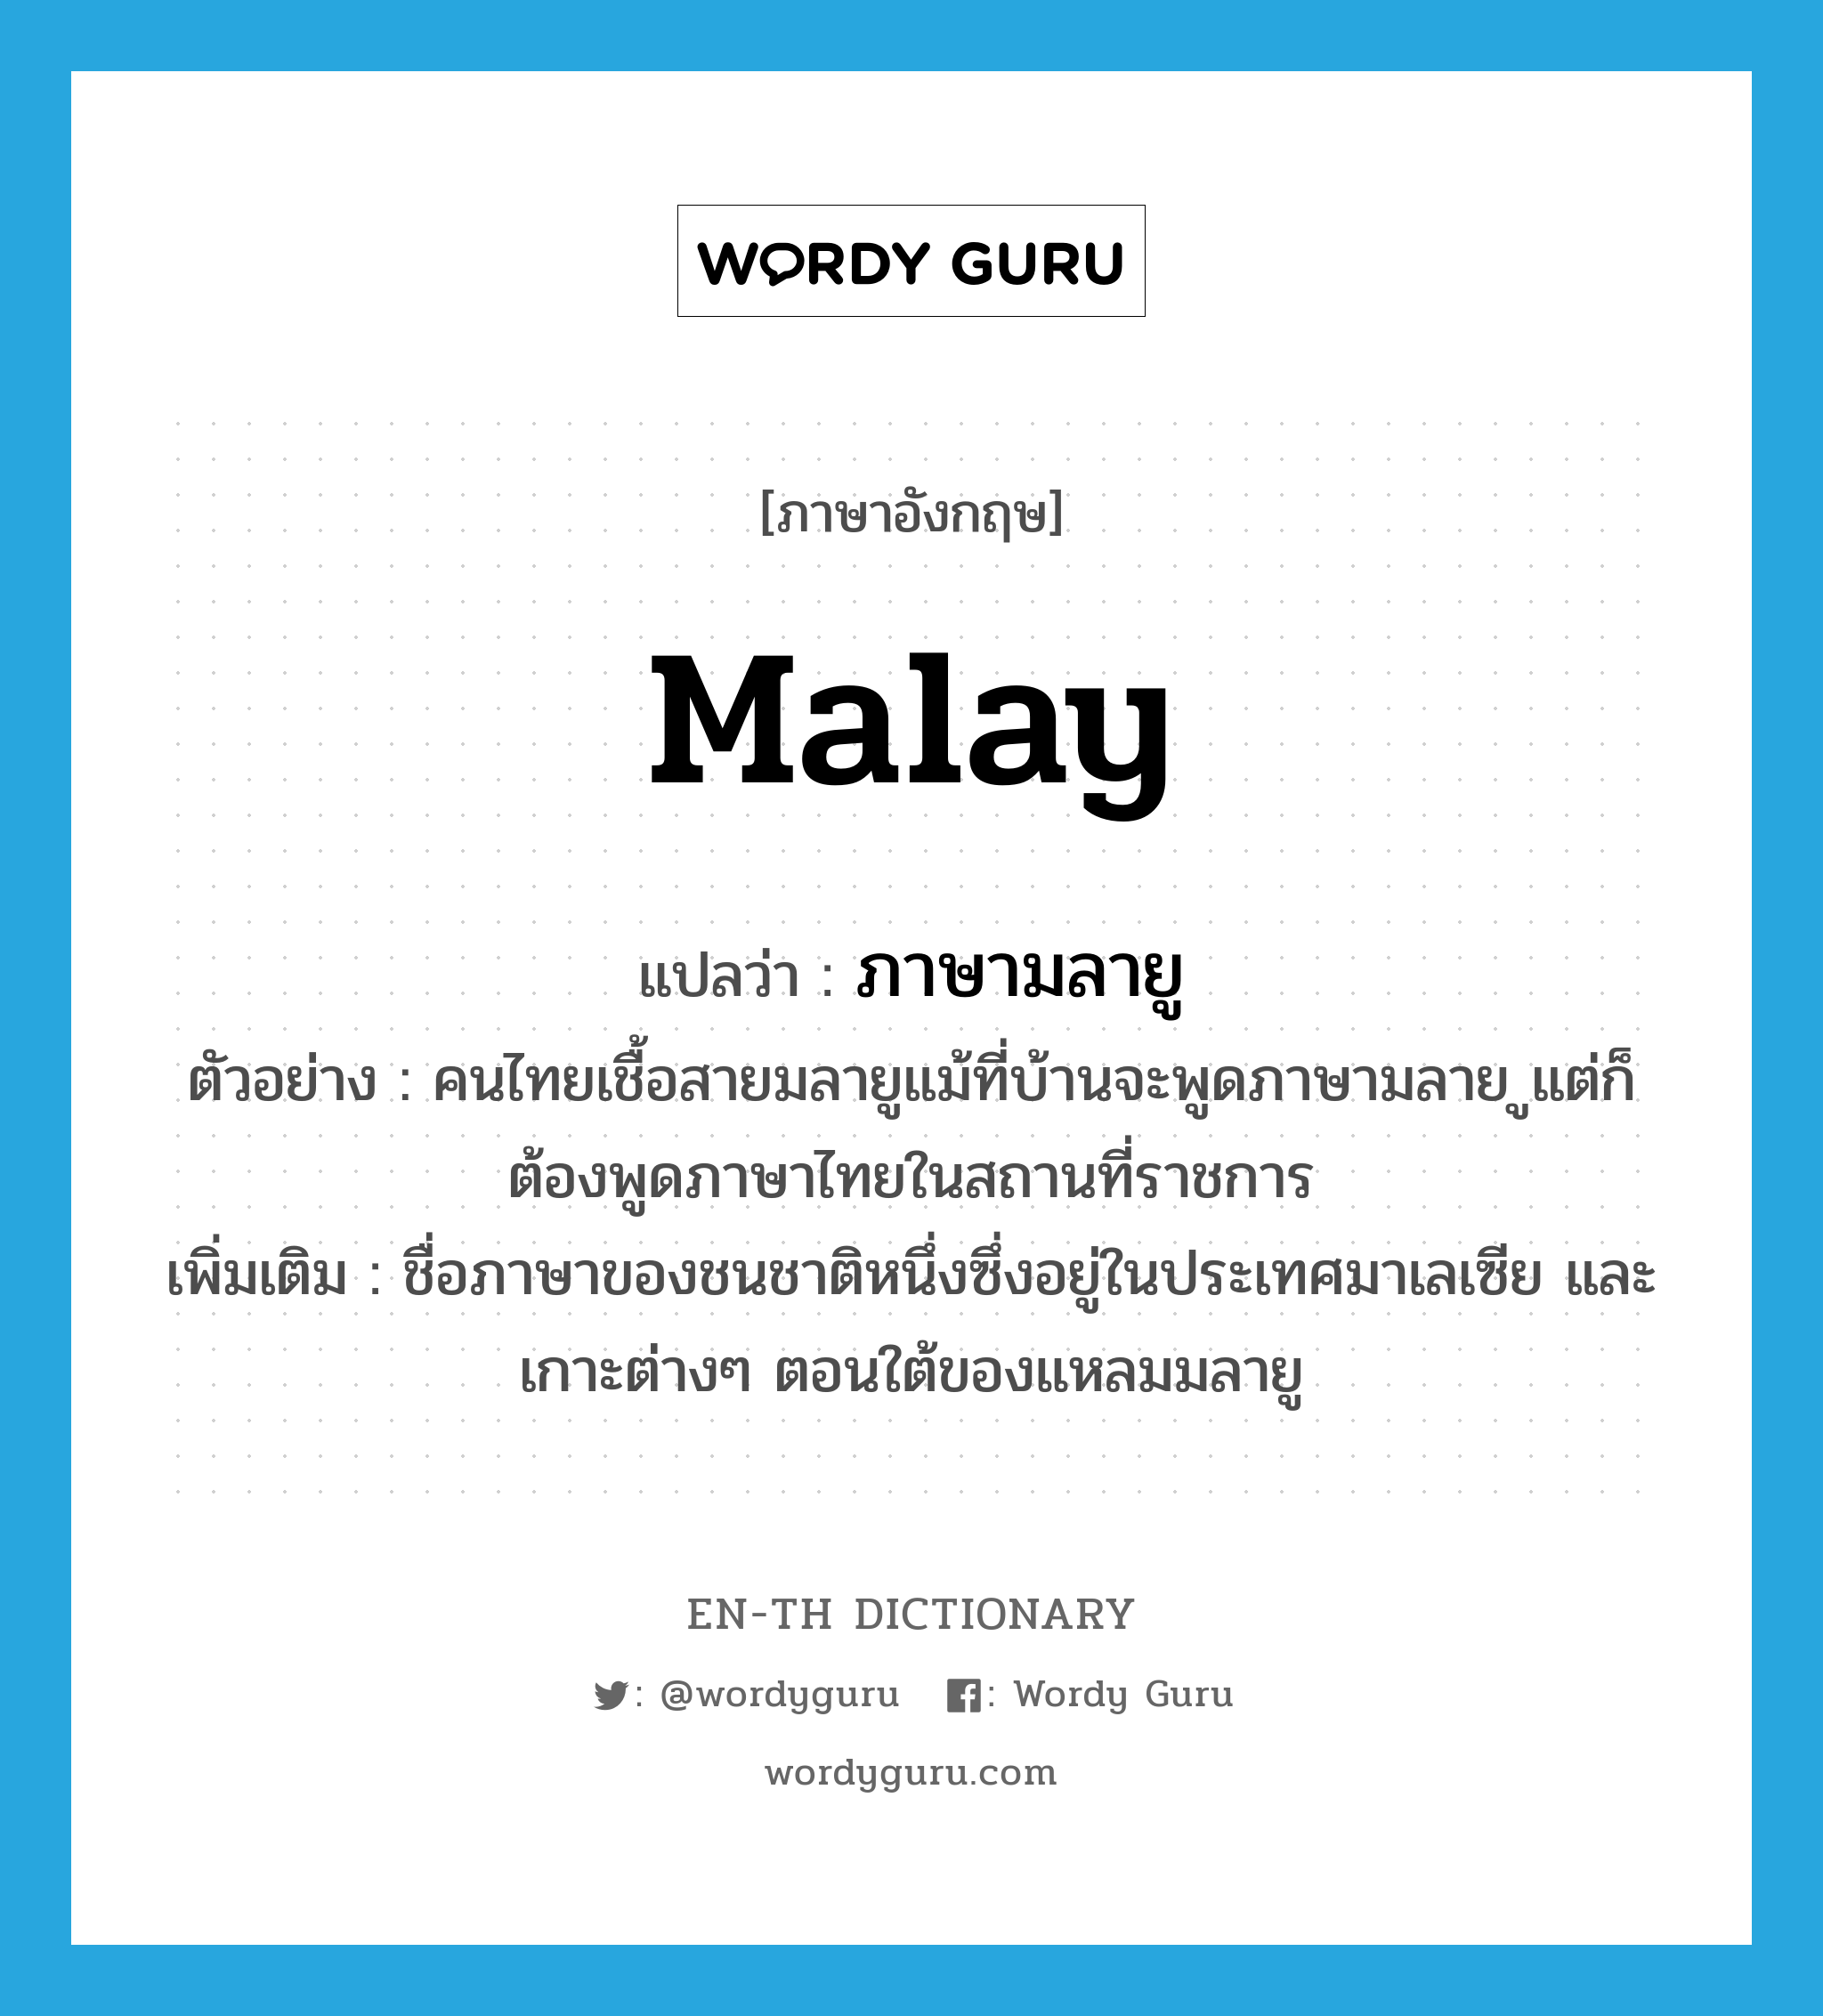 Malay แปลว่า?, คำศัพท์ภาษาอังกฤษ Malay แปลว่า ภาษามลายู ประเภท N ตัวอย่าง คนไทยเชื้อสายมลายูแม้ที่บ้านจะพูดภาษามลาย ูแต่ก็ต้องพูดภาษาไทยในสถานที่ราชการ เพิ่มเติม ชื่อภาษาของชนชาติหนึ่งซึ่งอยู่ในประเทศมาเลเซีย และเกาะต่างๆ ตอนใต้ของแหลมมลายู หมวด N